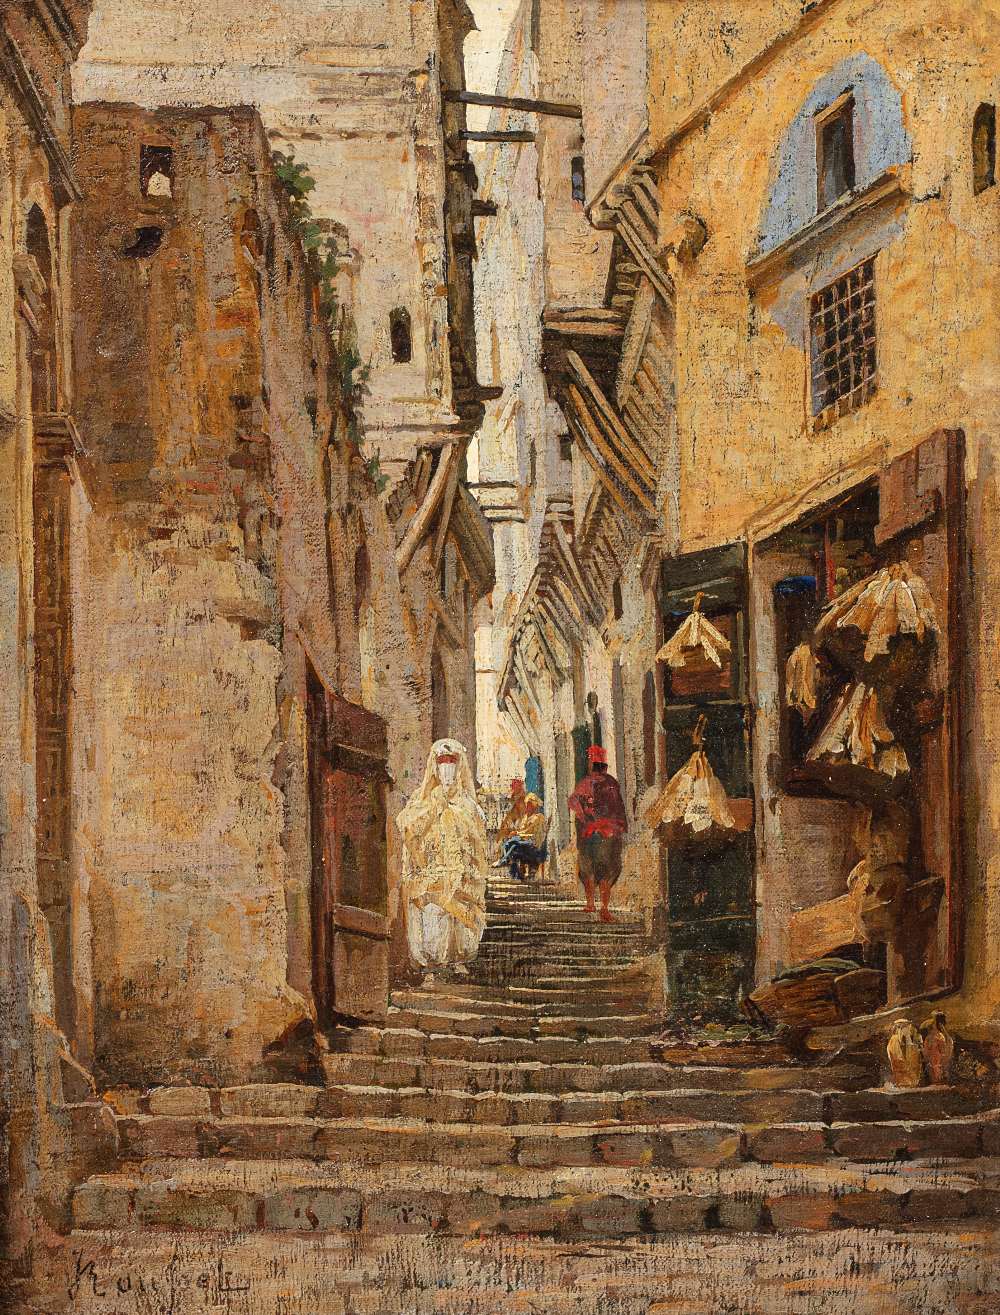 Jules ROUSSET (Aillant sur Milleron 1840 -? 1921)Dans la Casbah d'AlgerHuile sur toile marouflée sur